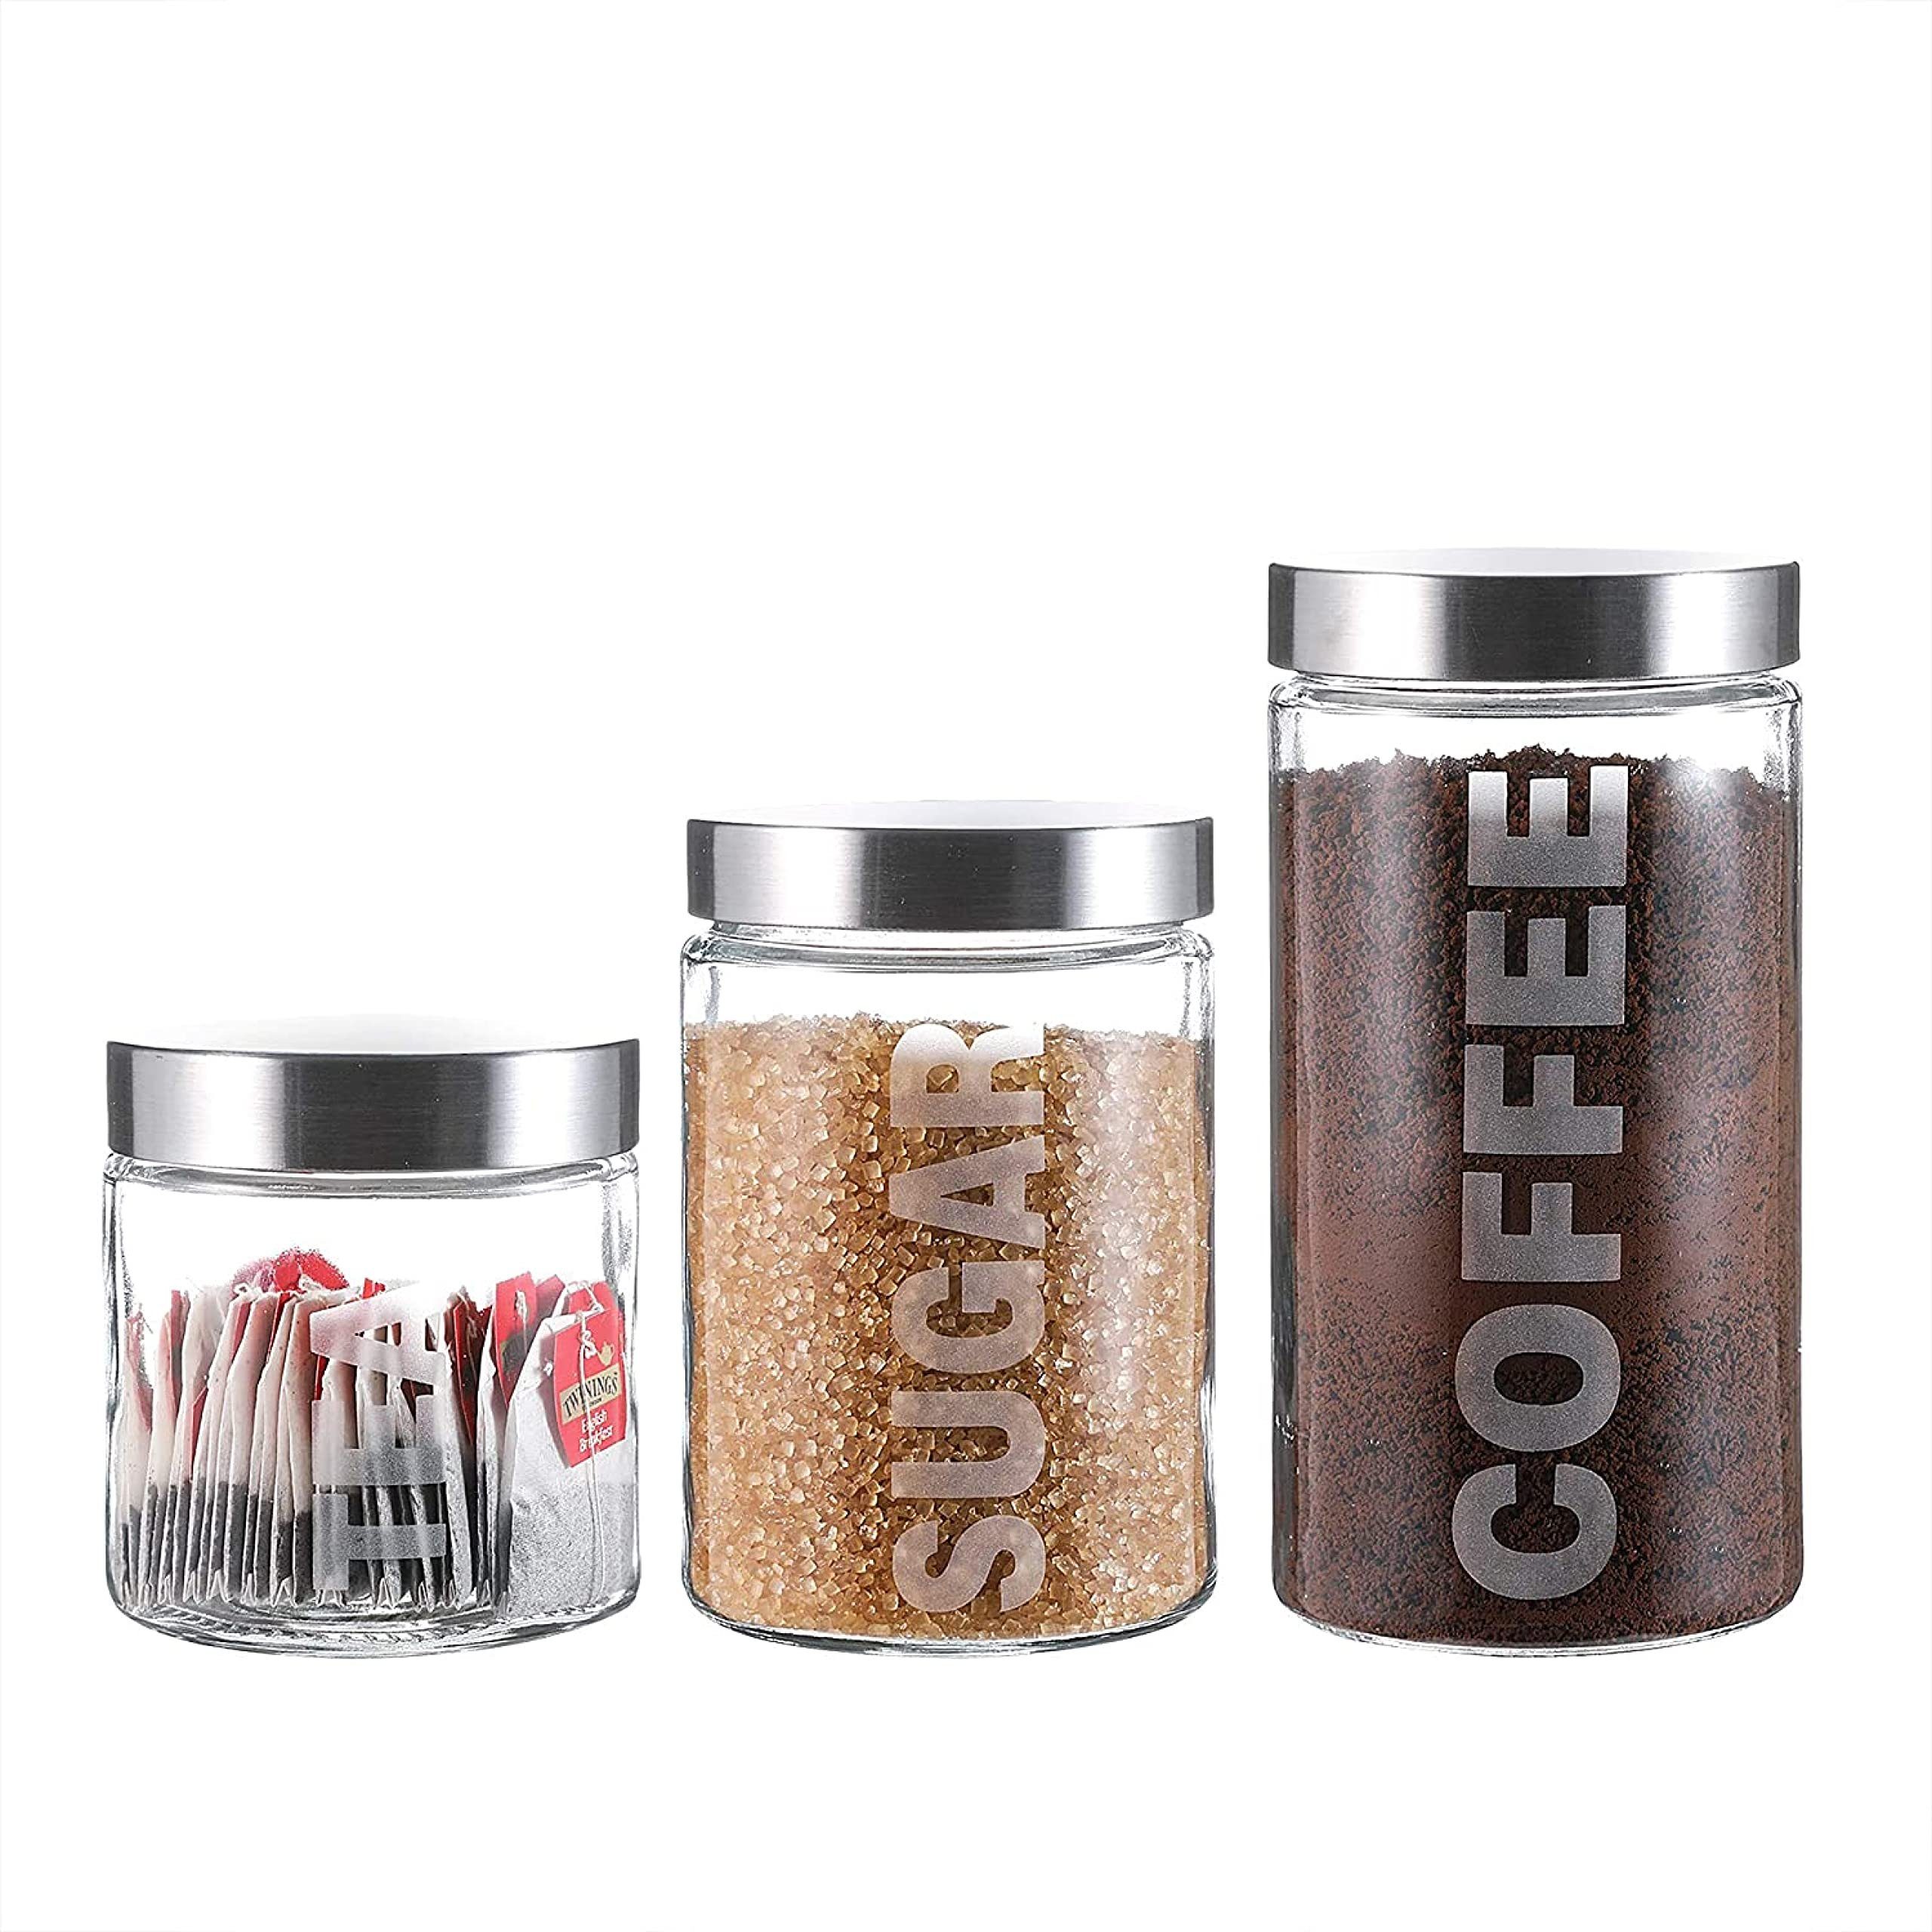 Whole Housewares Salz- / Pfefferstreuer Luftdichte Glasbehälter mit Deckel, 3-teilig für Kaffee, Klar Glas